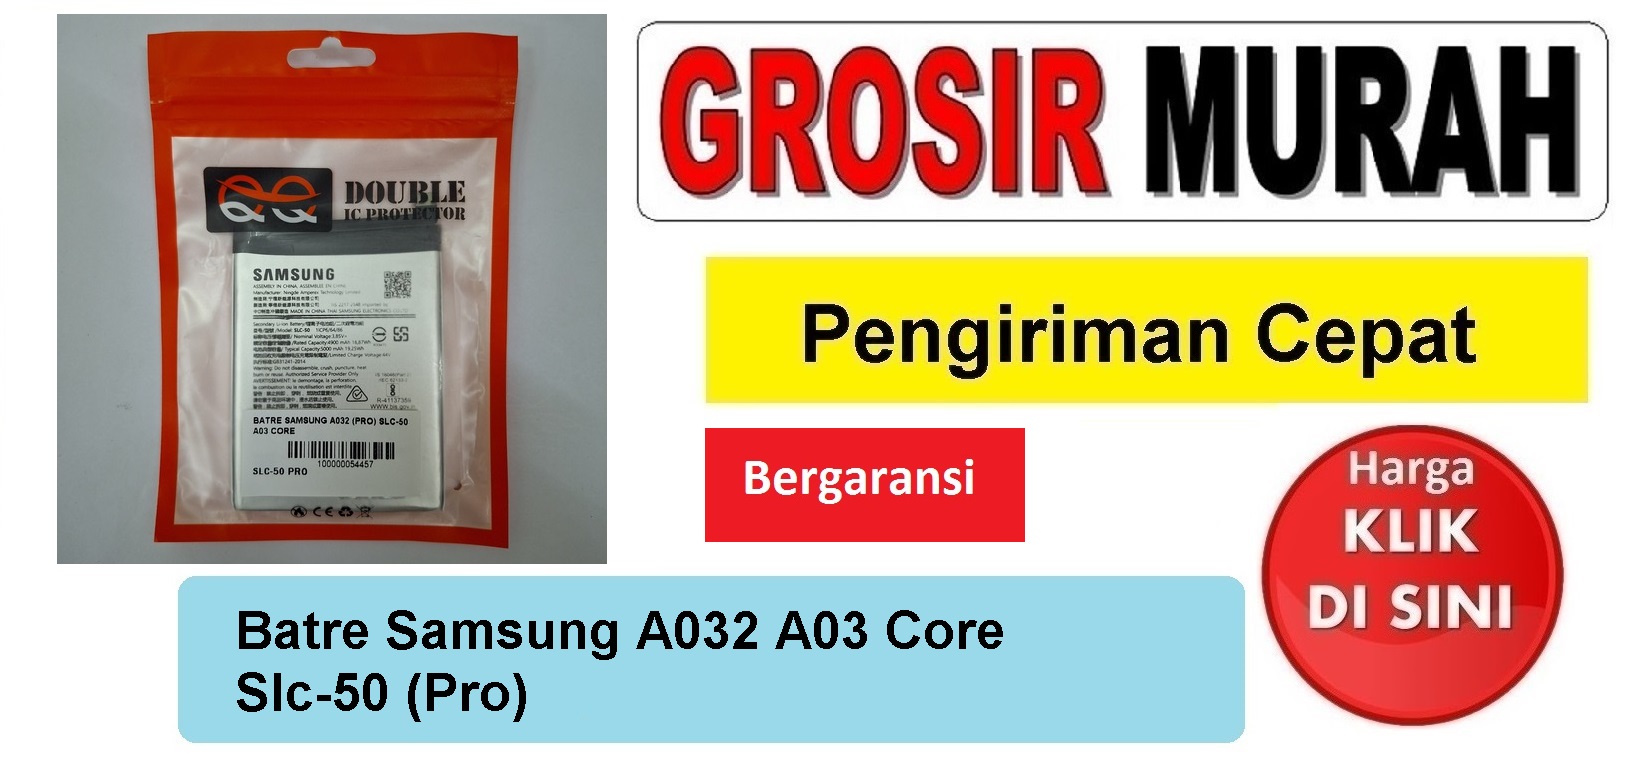 Batre Samsung A032 A03 Core Slc-50 (Pro) Baterai Battery Bergaransi Batere